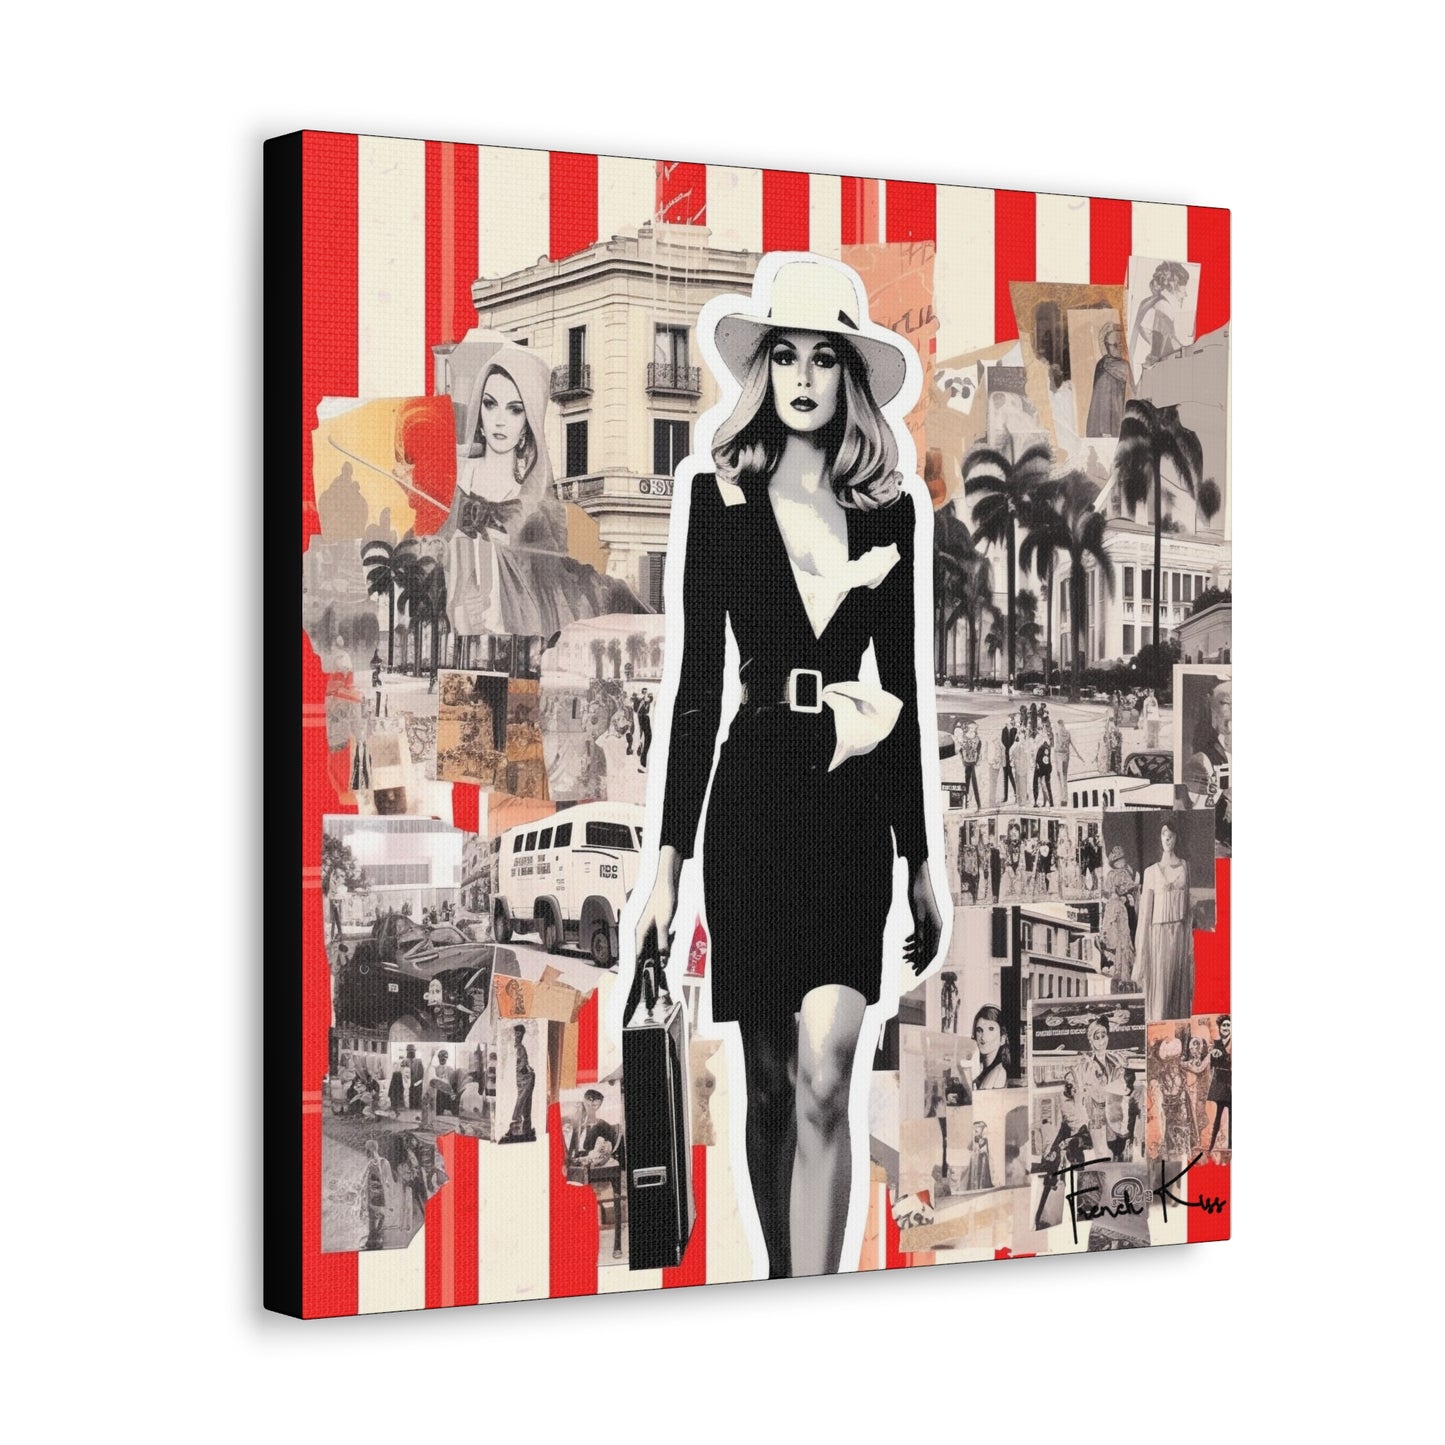 LE TRAVAILLE French Kiss Pop Art, Gallery, Canvas, Art, Vintage, Retro, St. Tropez, Collection, French Riviera, Travel, Cote d'Azur, Cannes, Pop Art, Decor